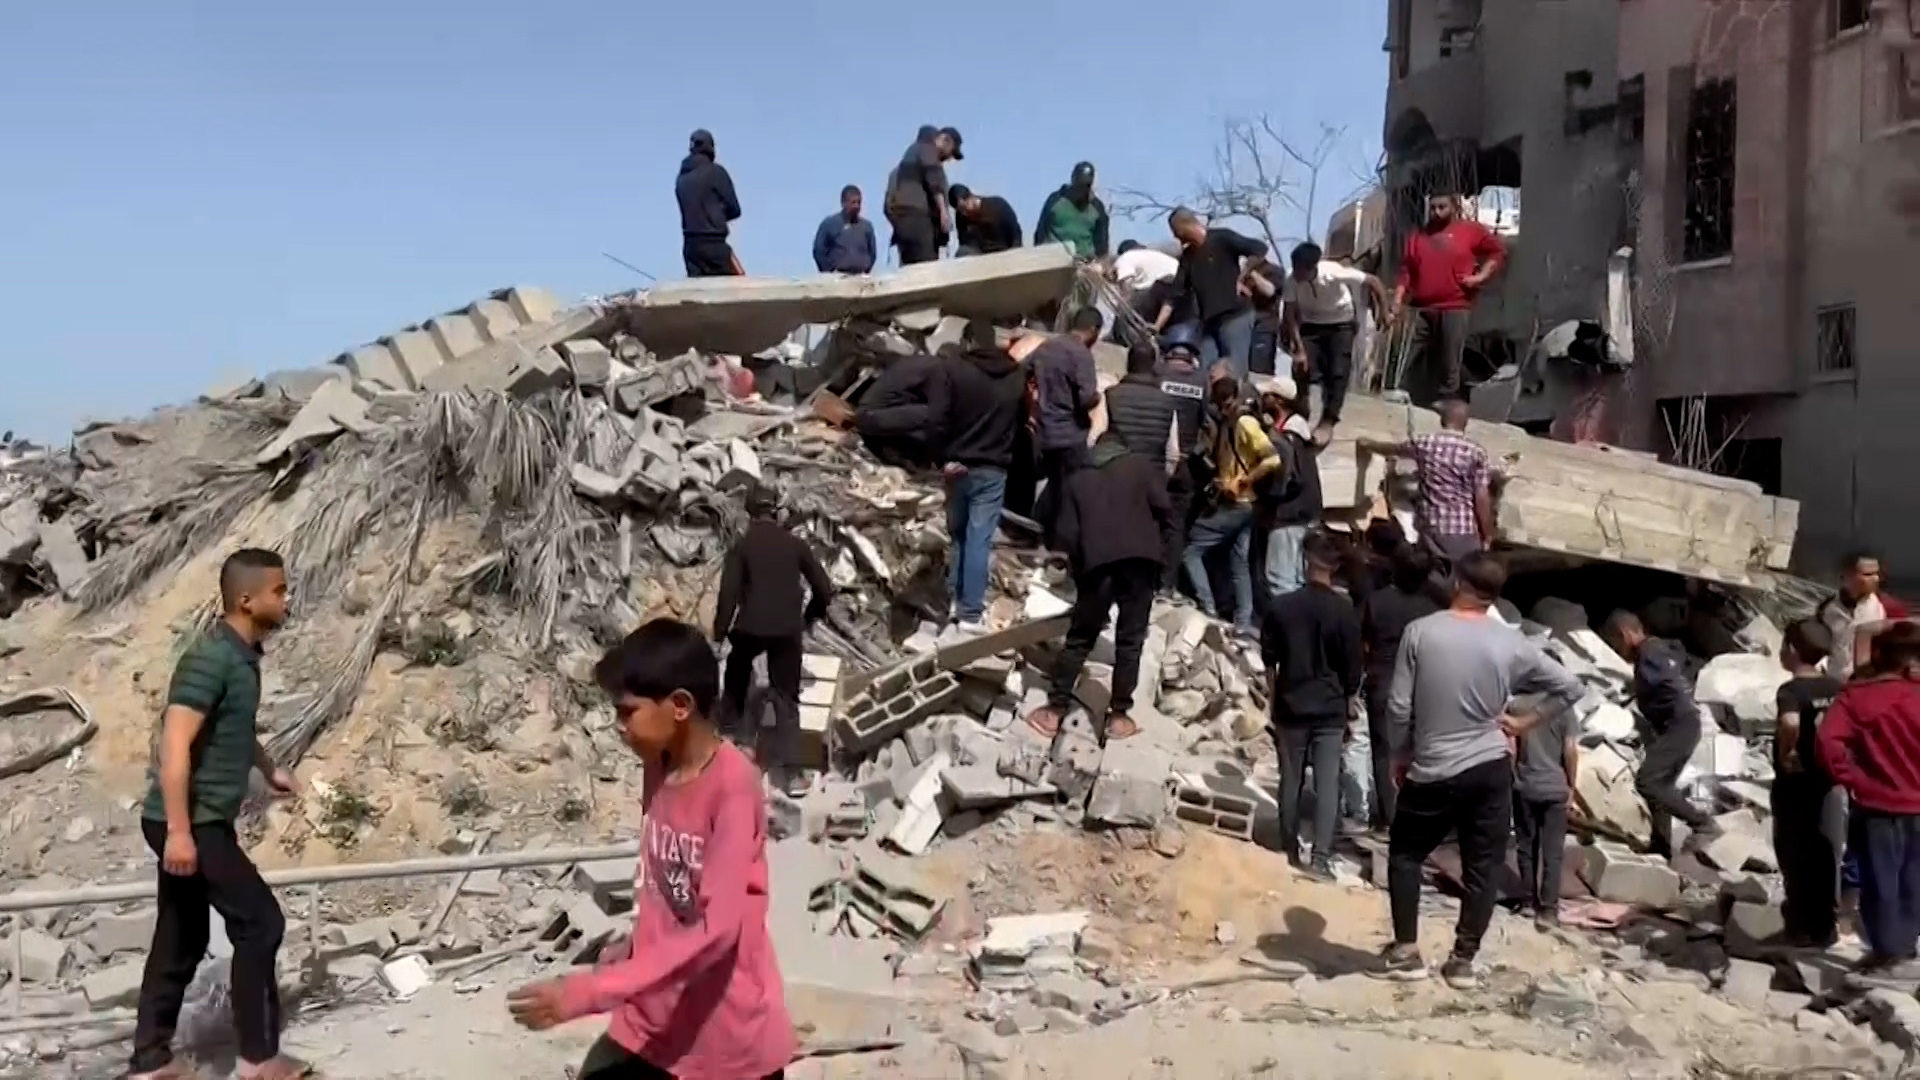 دمار كبير بقصف إسرائيلي استهدف منزل عائلة أبو عون في مخيم المغازي وسط القطاع | التقارير الإخبارية – البوكس نيوز